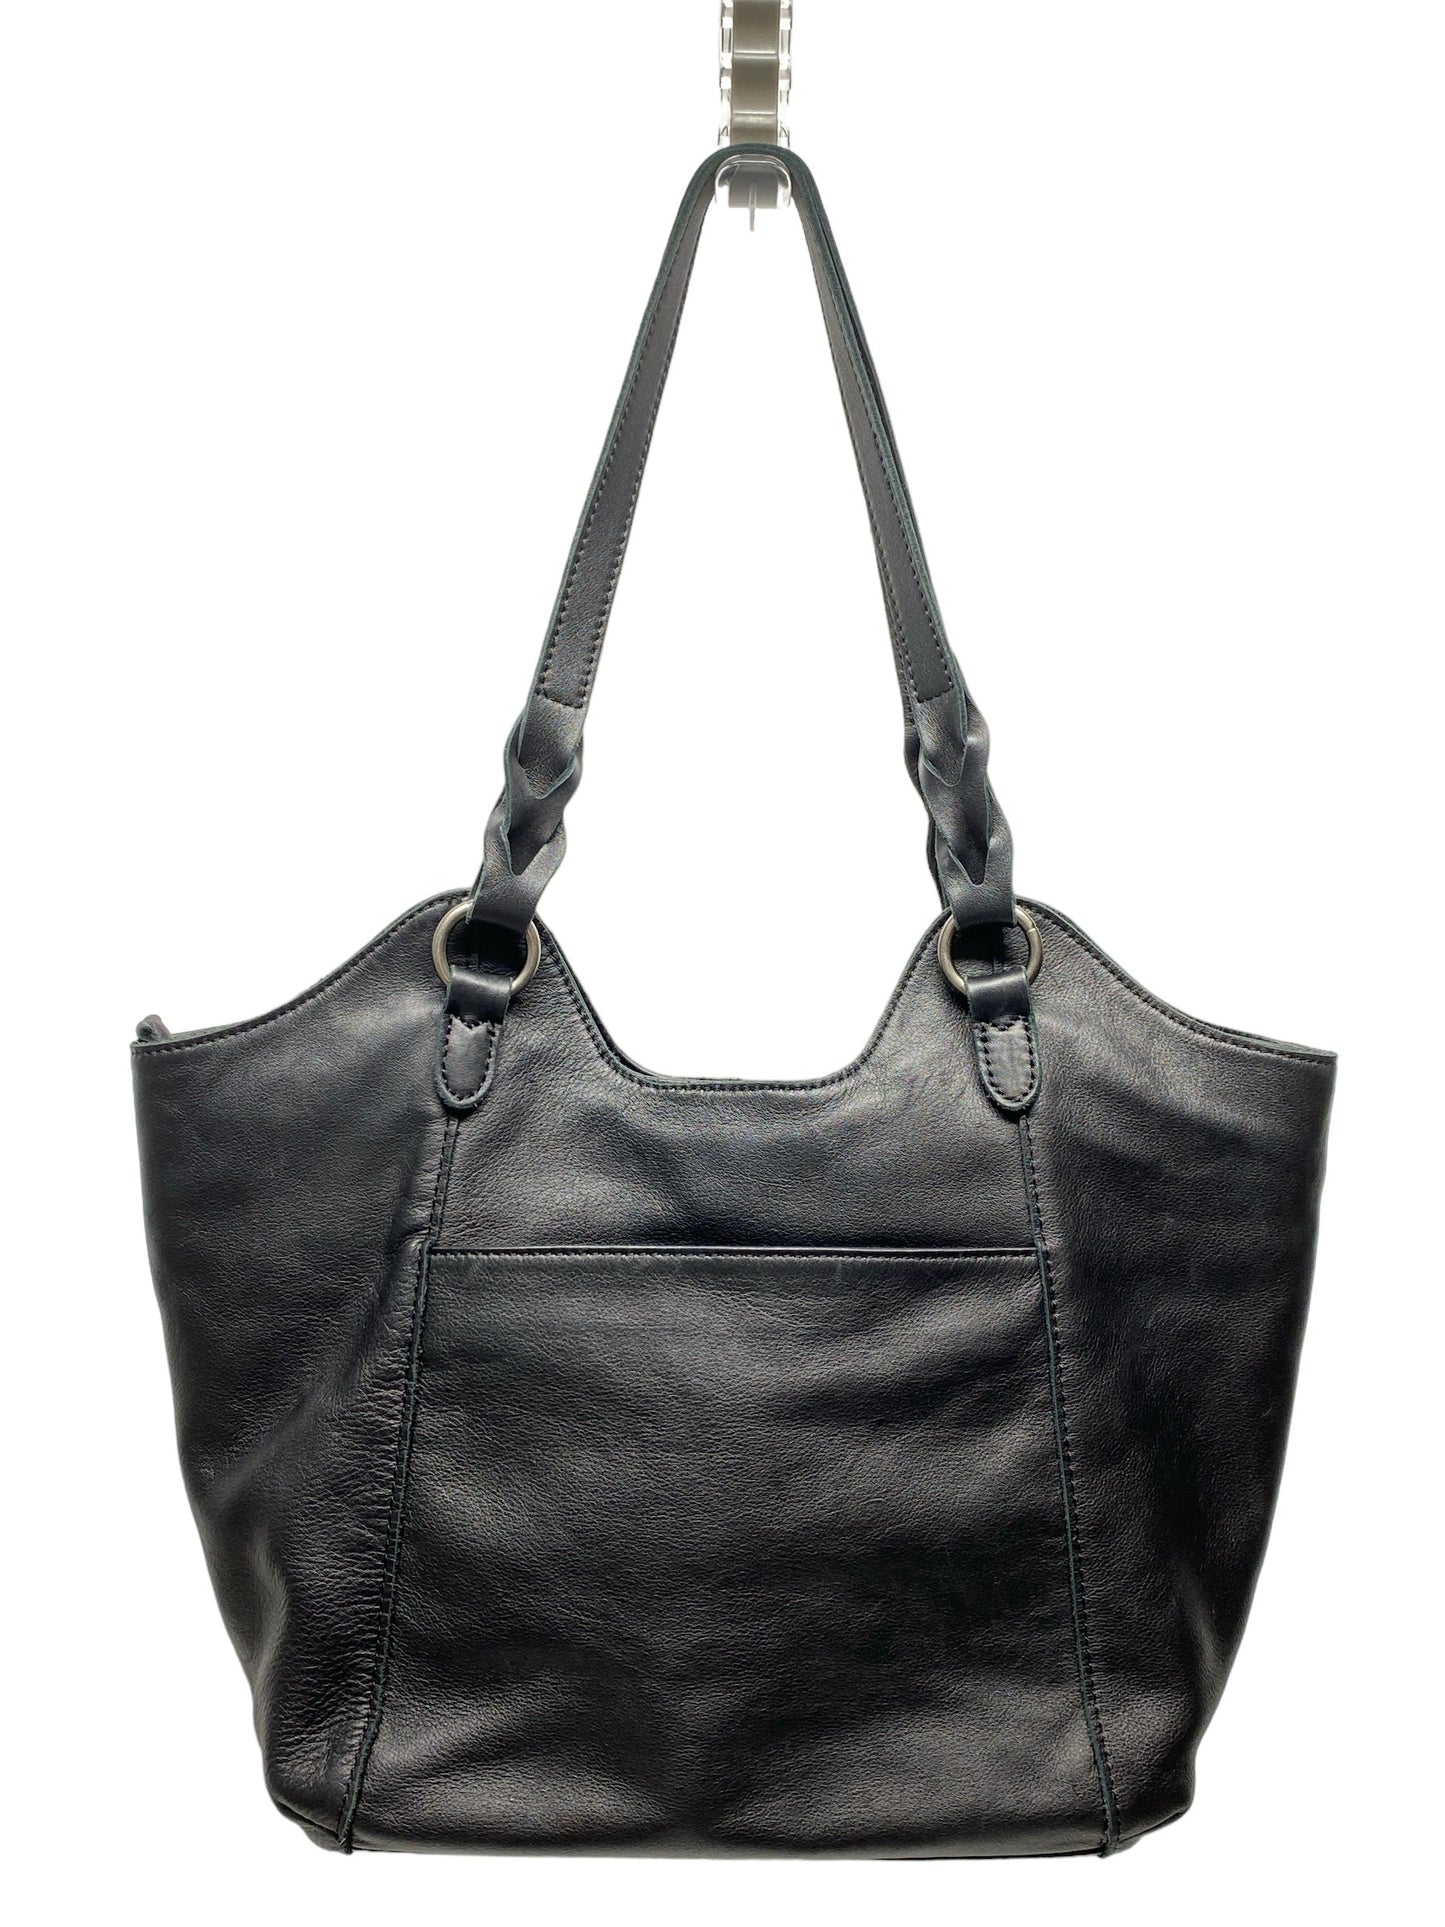 Handbag Leather By The Sak  Size: Large